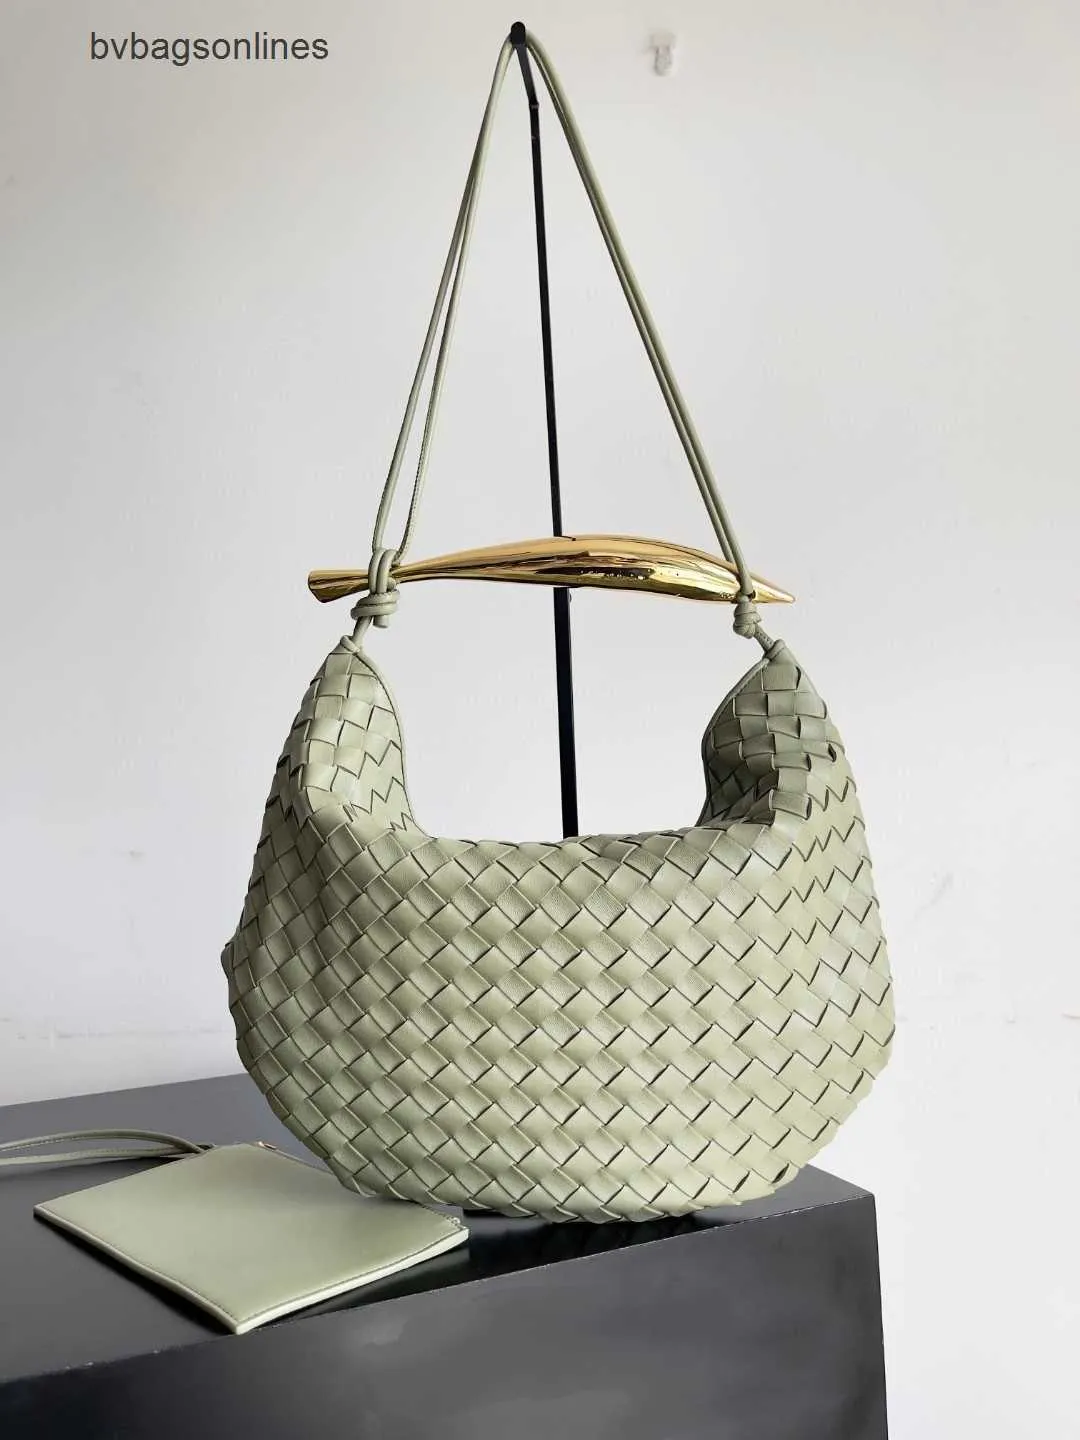 Luxus Bottegs Venets Jodie Bag Neu 39 cm Schafkinte gewebt Womens Bag Achselhöhle Metall Sardine Griff tragbare Schulter mit Original 1: 1 Logo